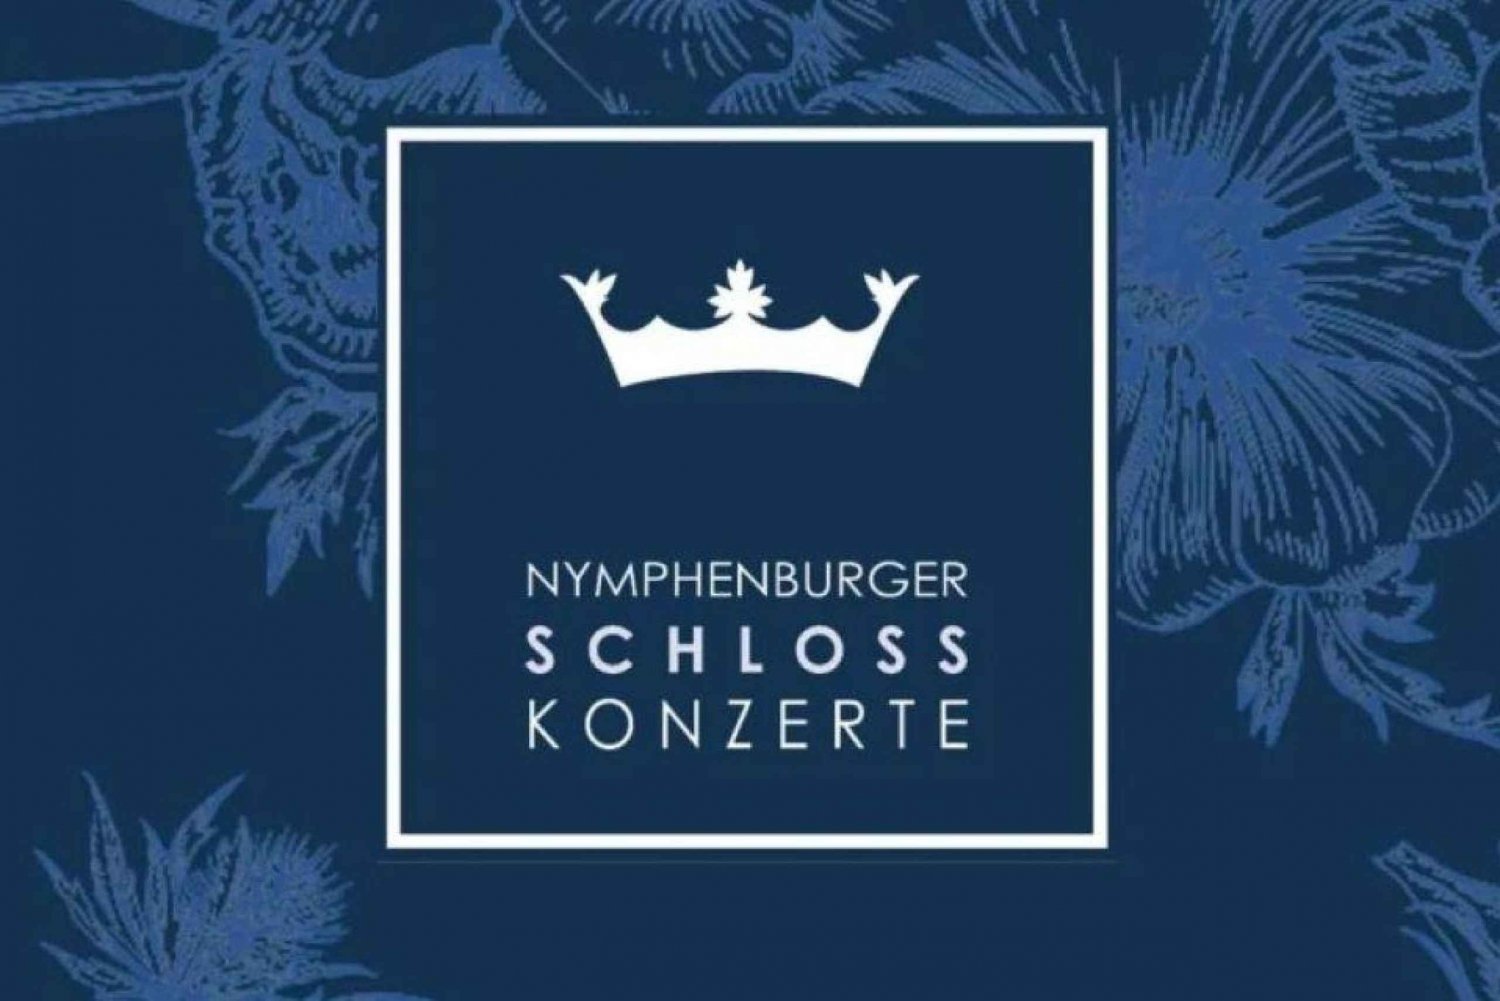 Munique: Concerto no Hubertus Hall no Palácio de Nymphenburg